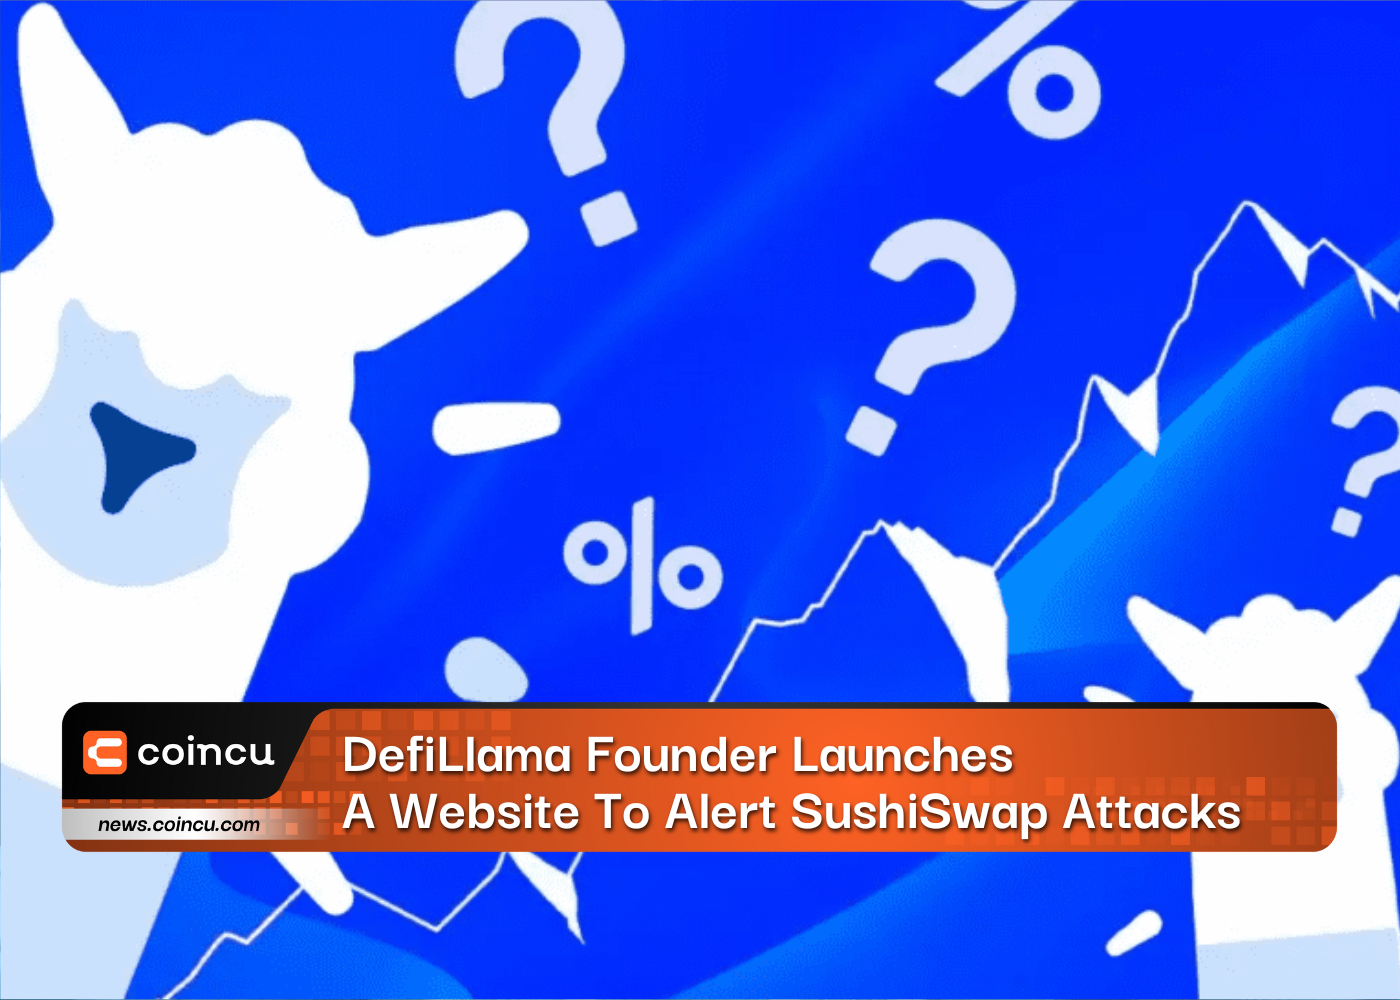 El fundador de DefiLlama lanza un sitio web para alertar sobre los ataques de SushiSwap